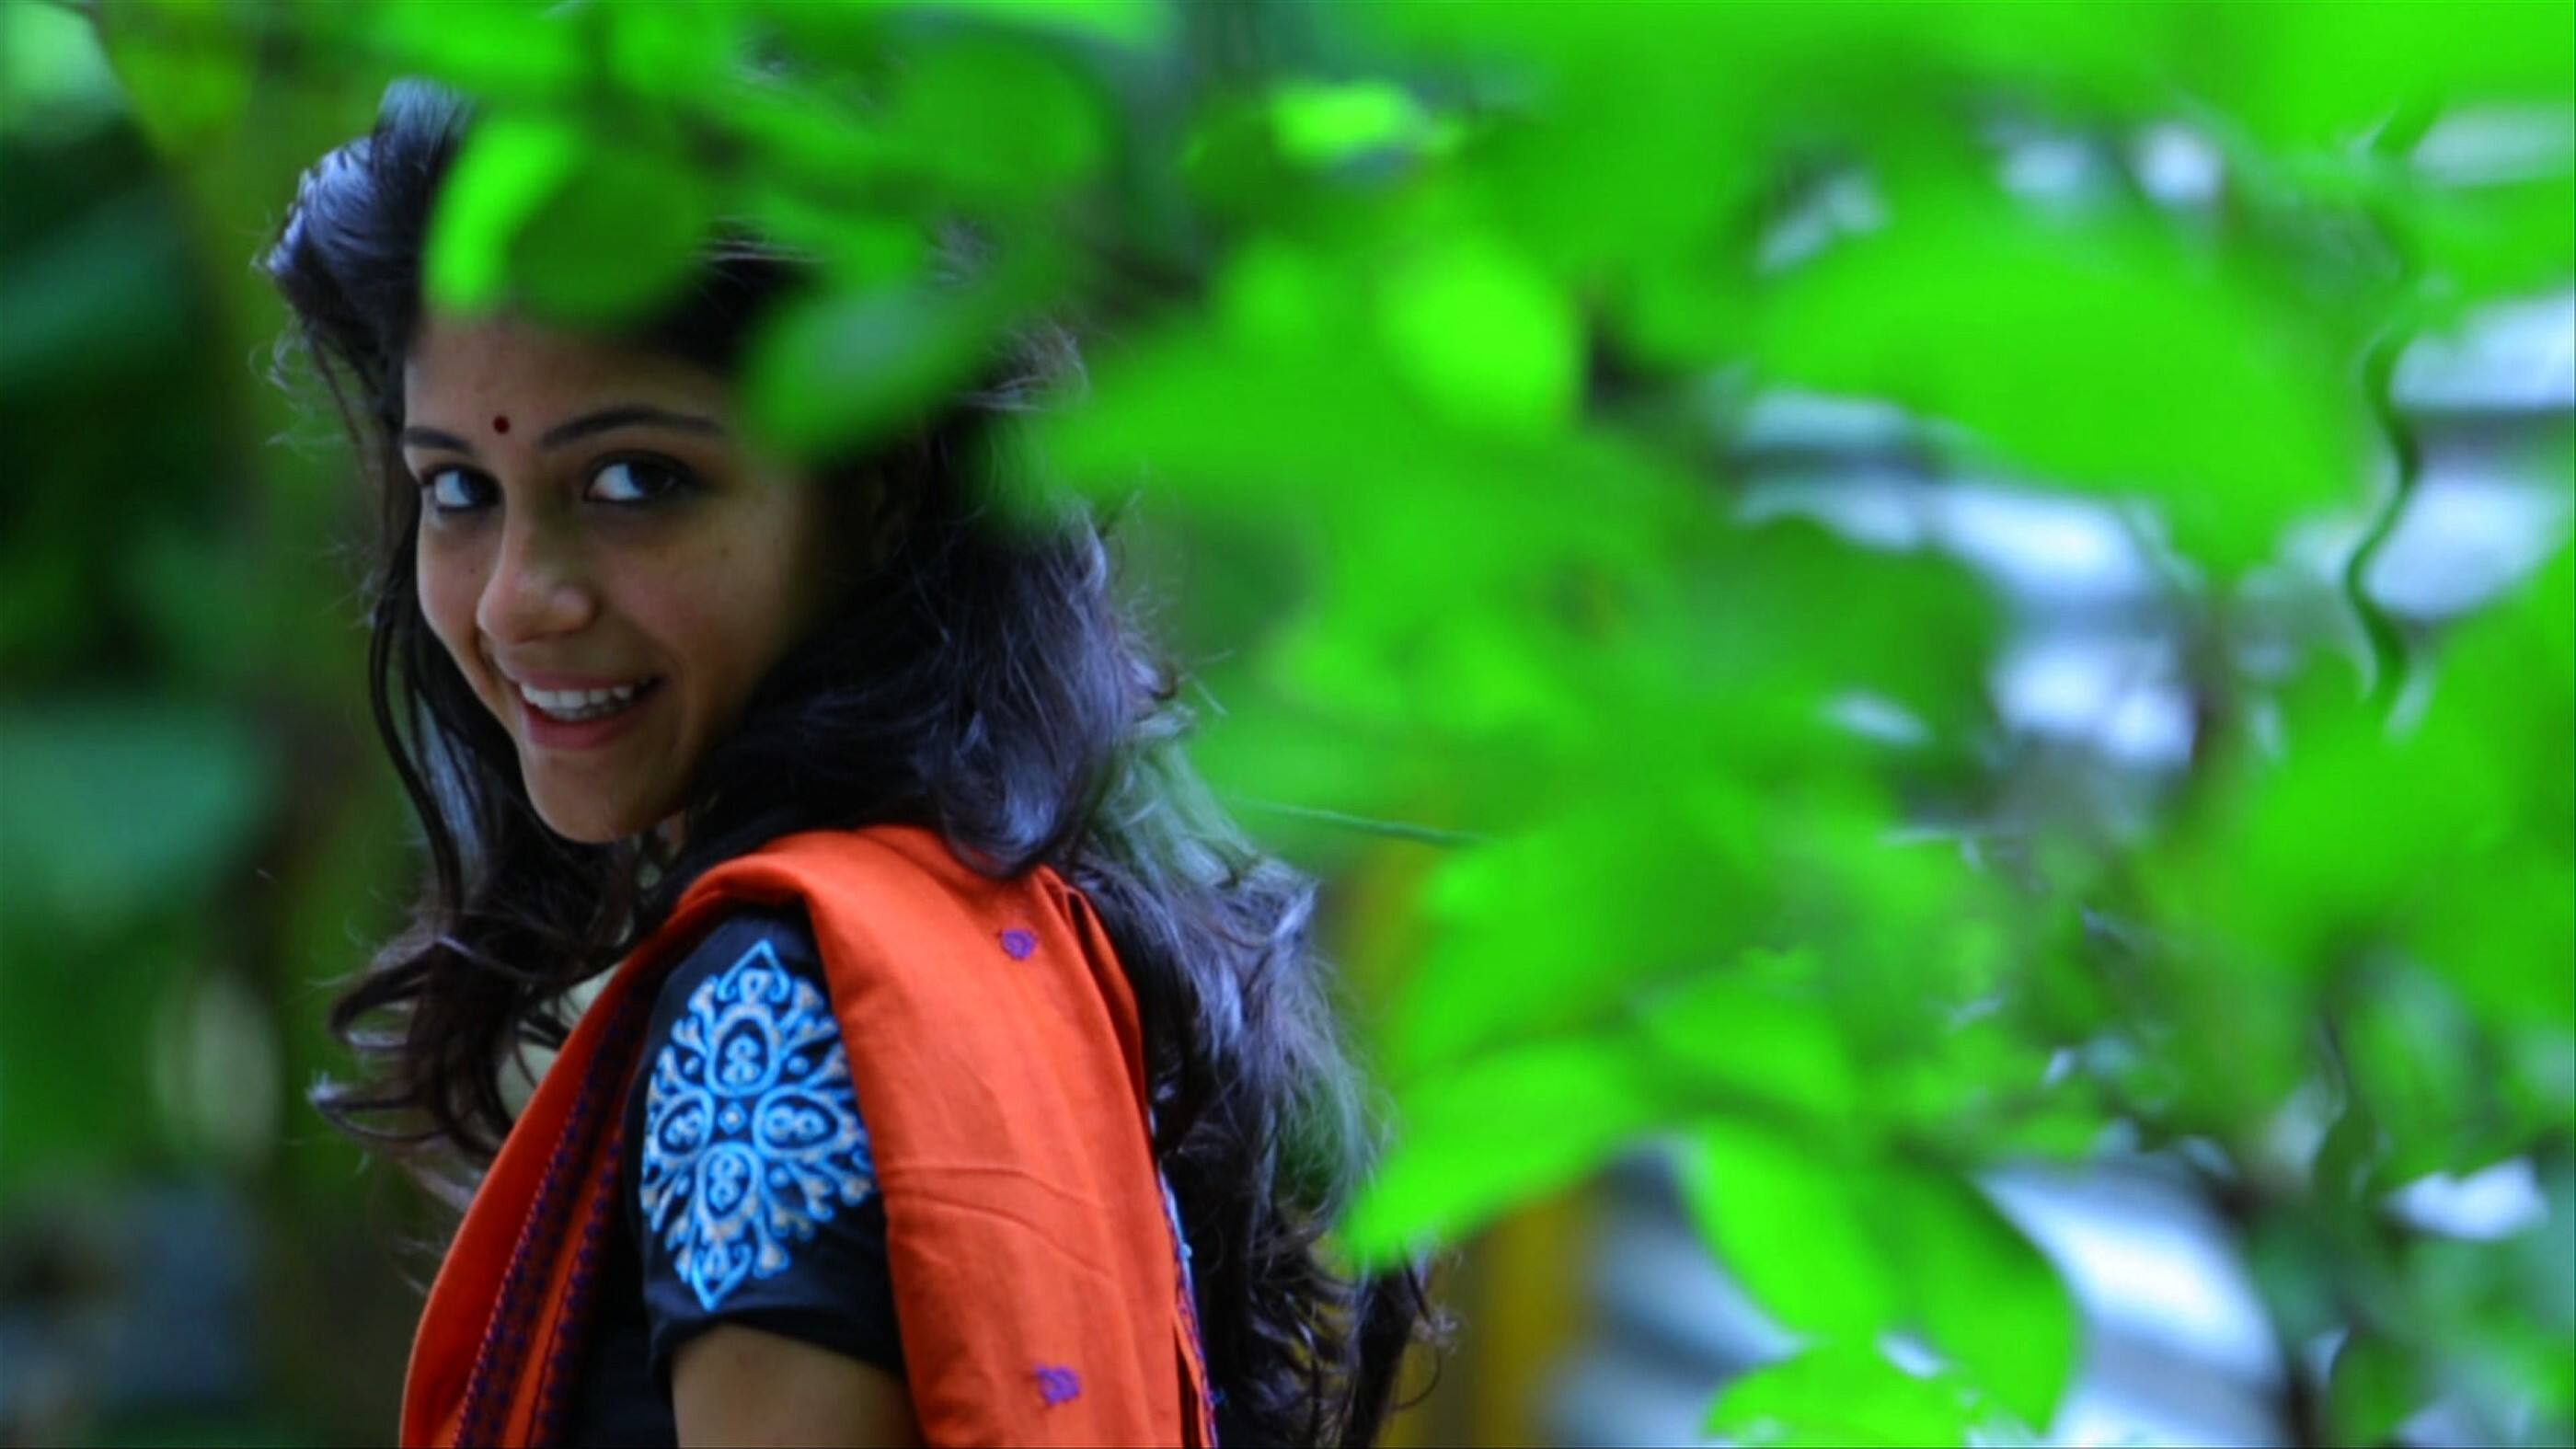 tamil movie aruvi review by jomit jose